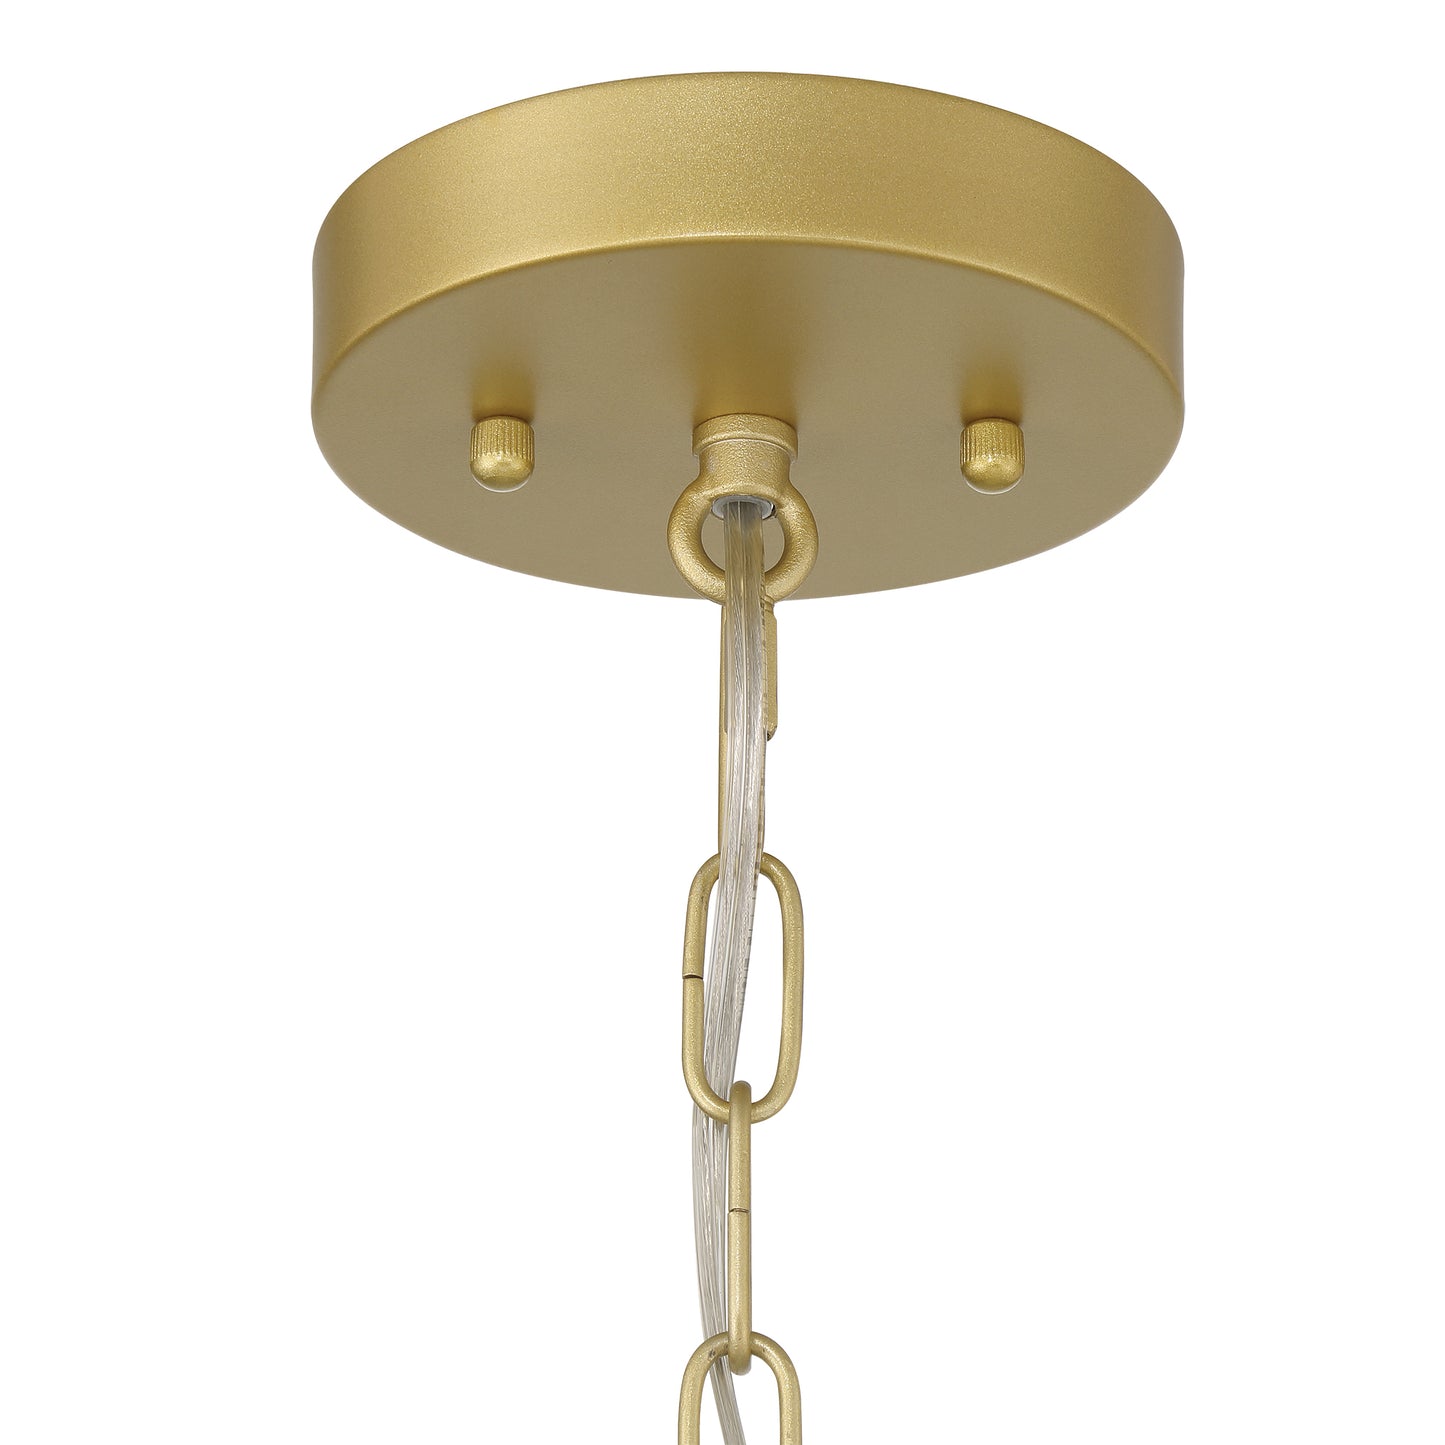 1-Light Gold Sphere Pendant